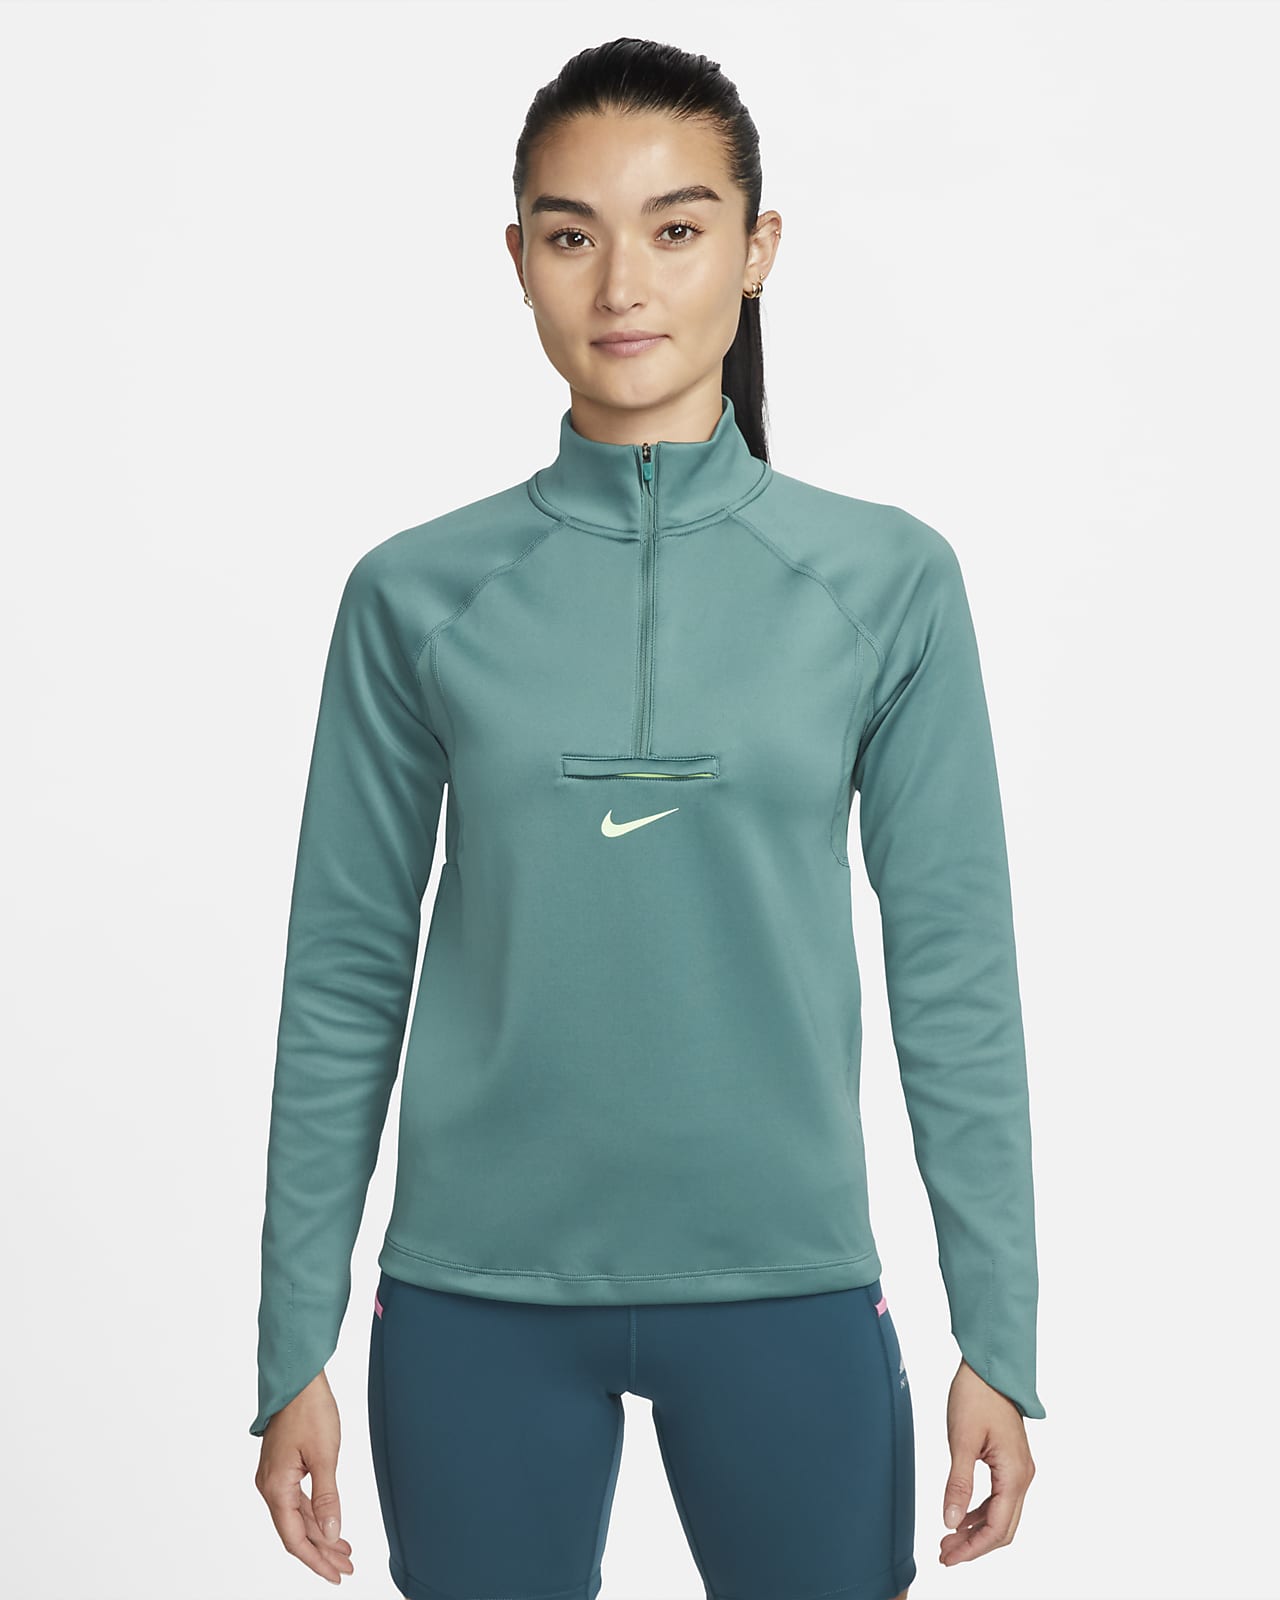 เสื้อมิดเลเยอร์วิ่งเทรลผู้หญิง Nike Dri-FIT Element